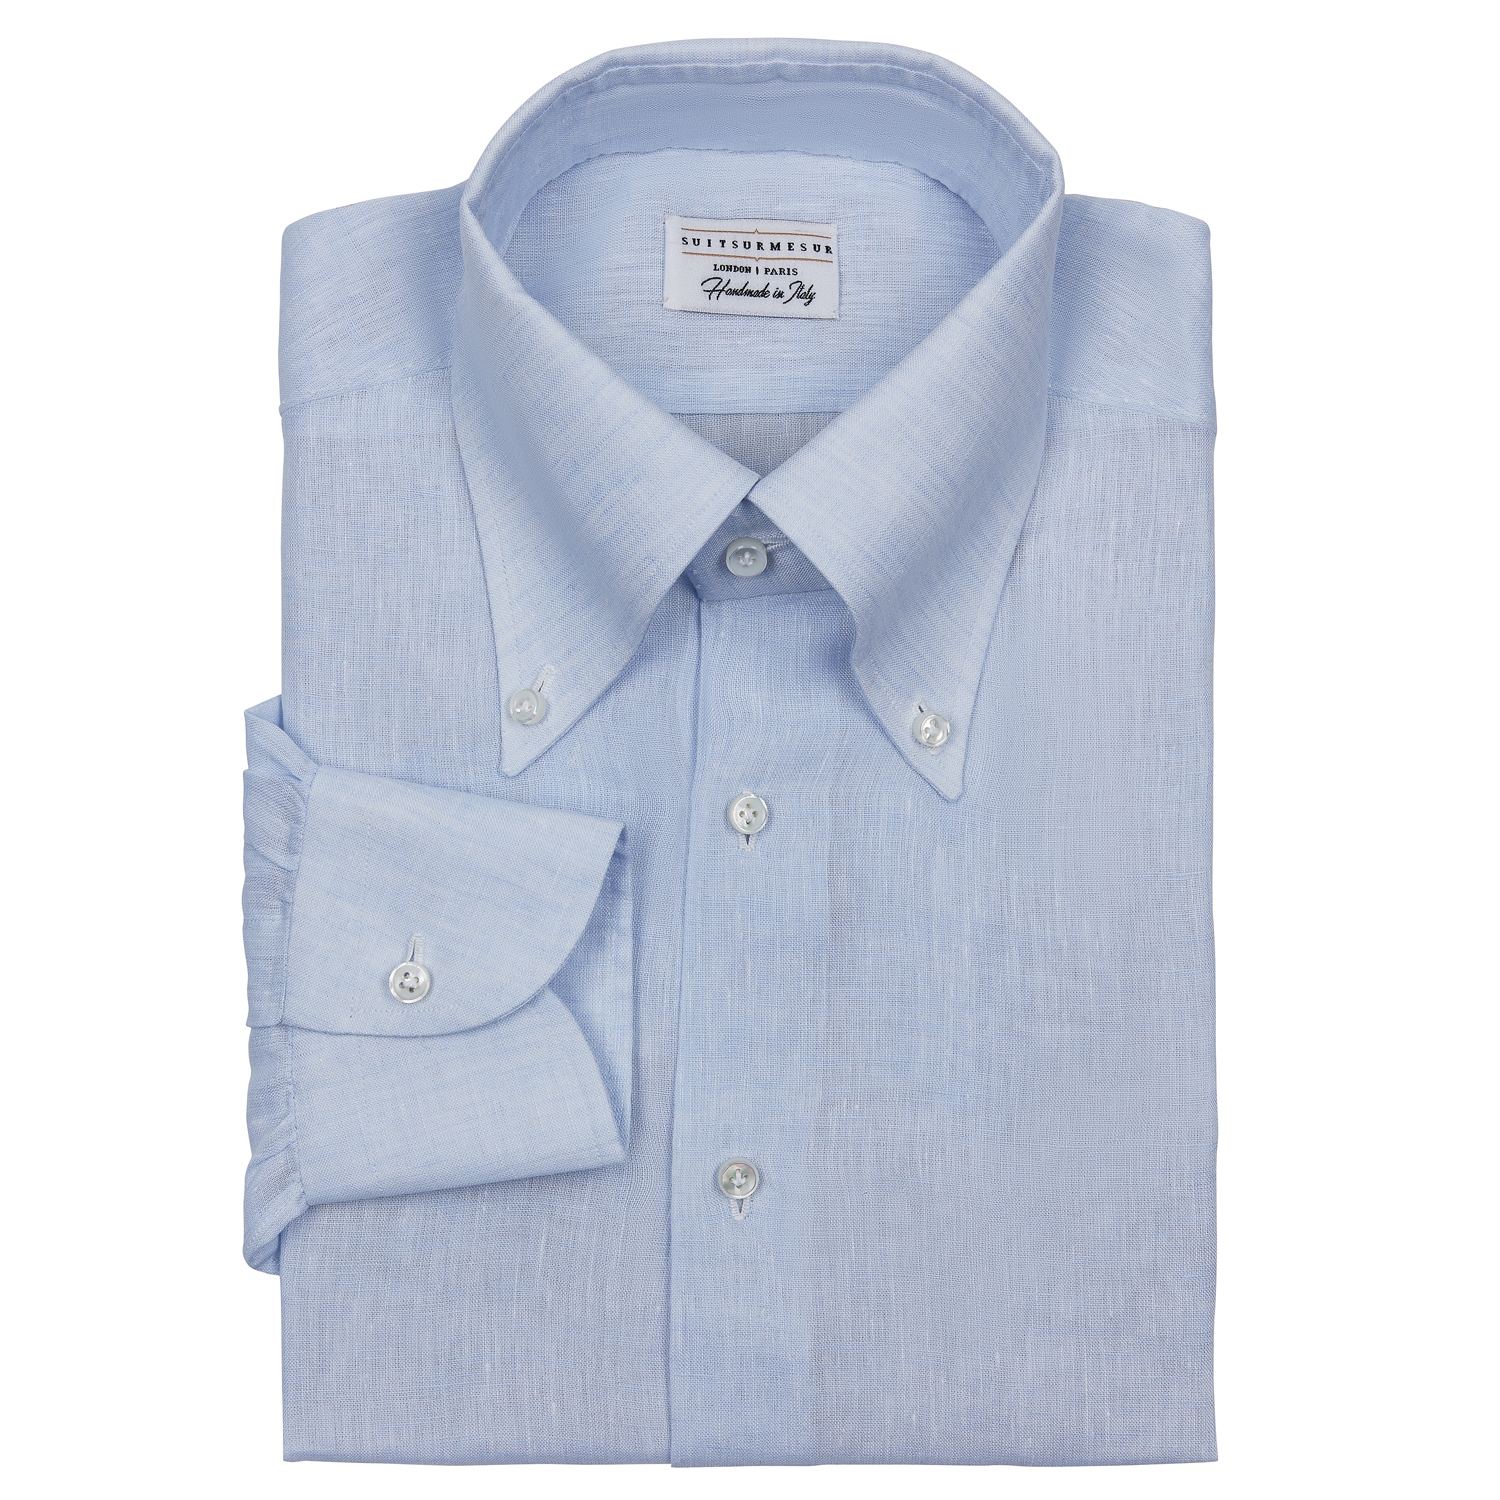 Linen button down collar shirt